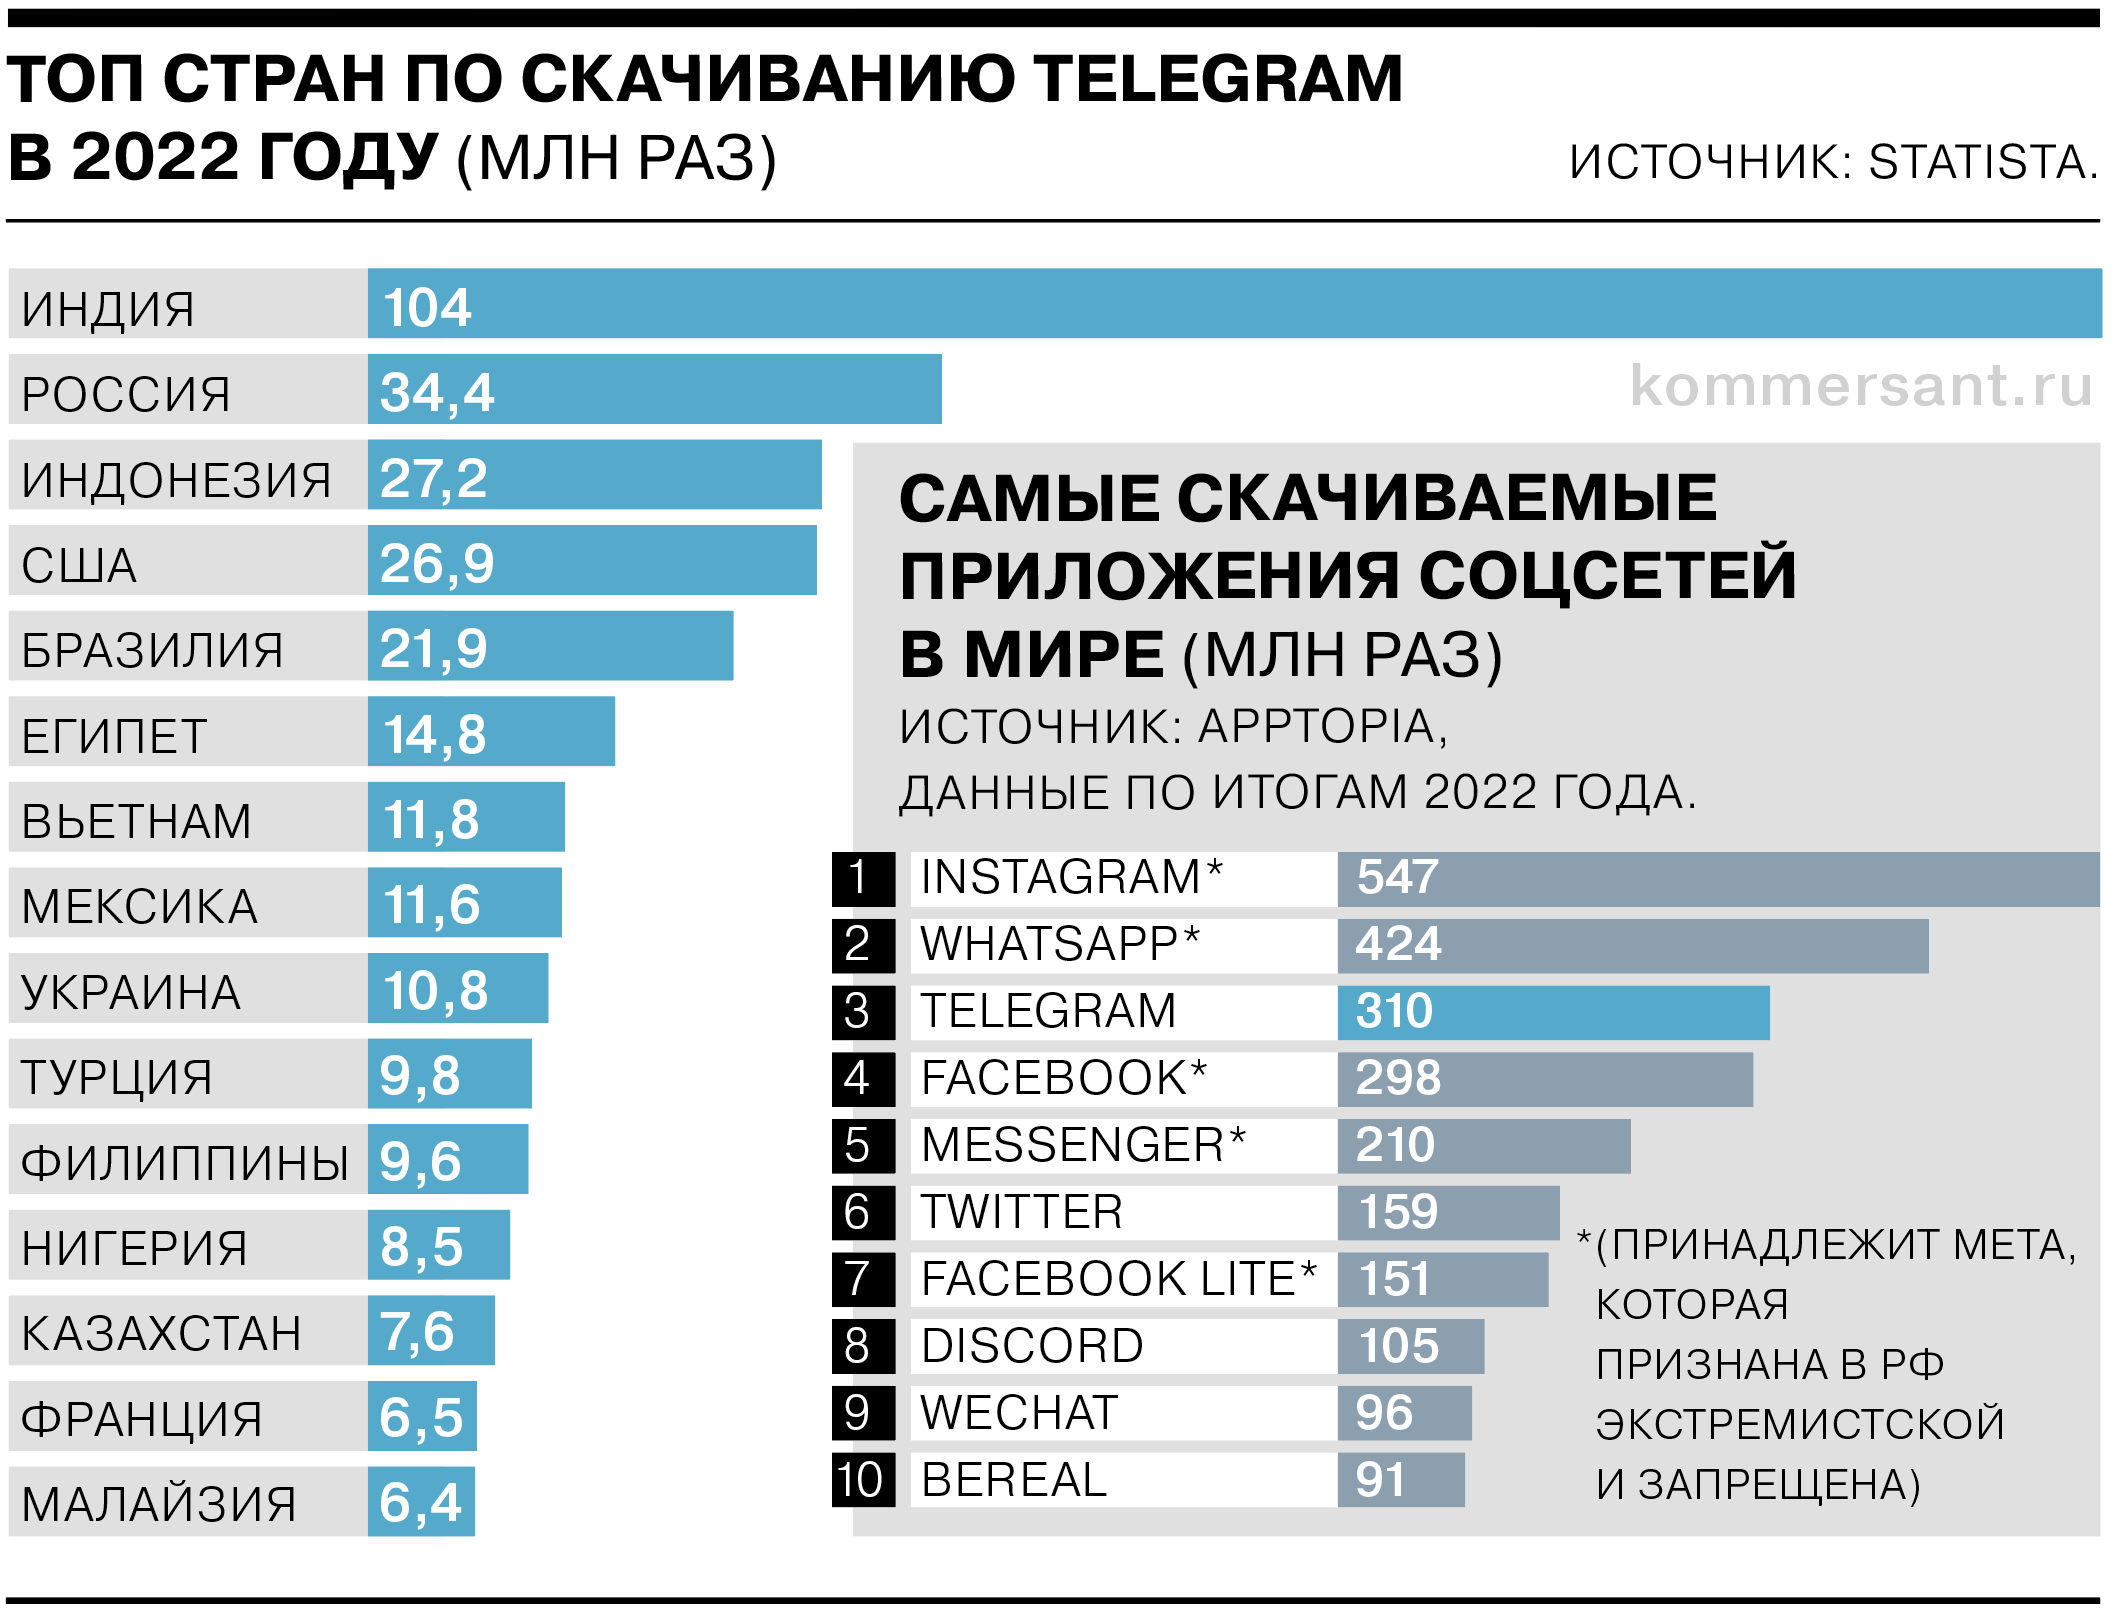 Сколько человек в рф 2023. Телеграмм 2023. Рейтинг мессенджеров в России 2023. Аудитории телеканалов 2023. Сколько пользователей в телеграмм в России 2023 год.